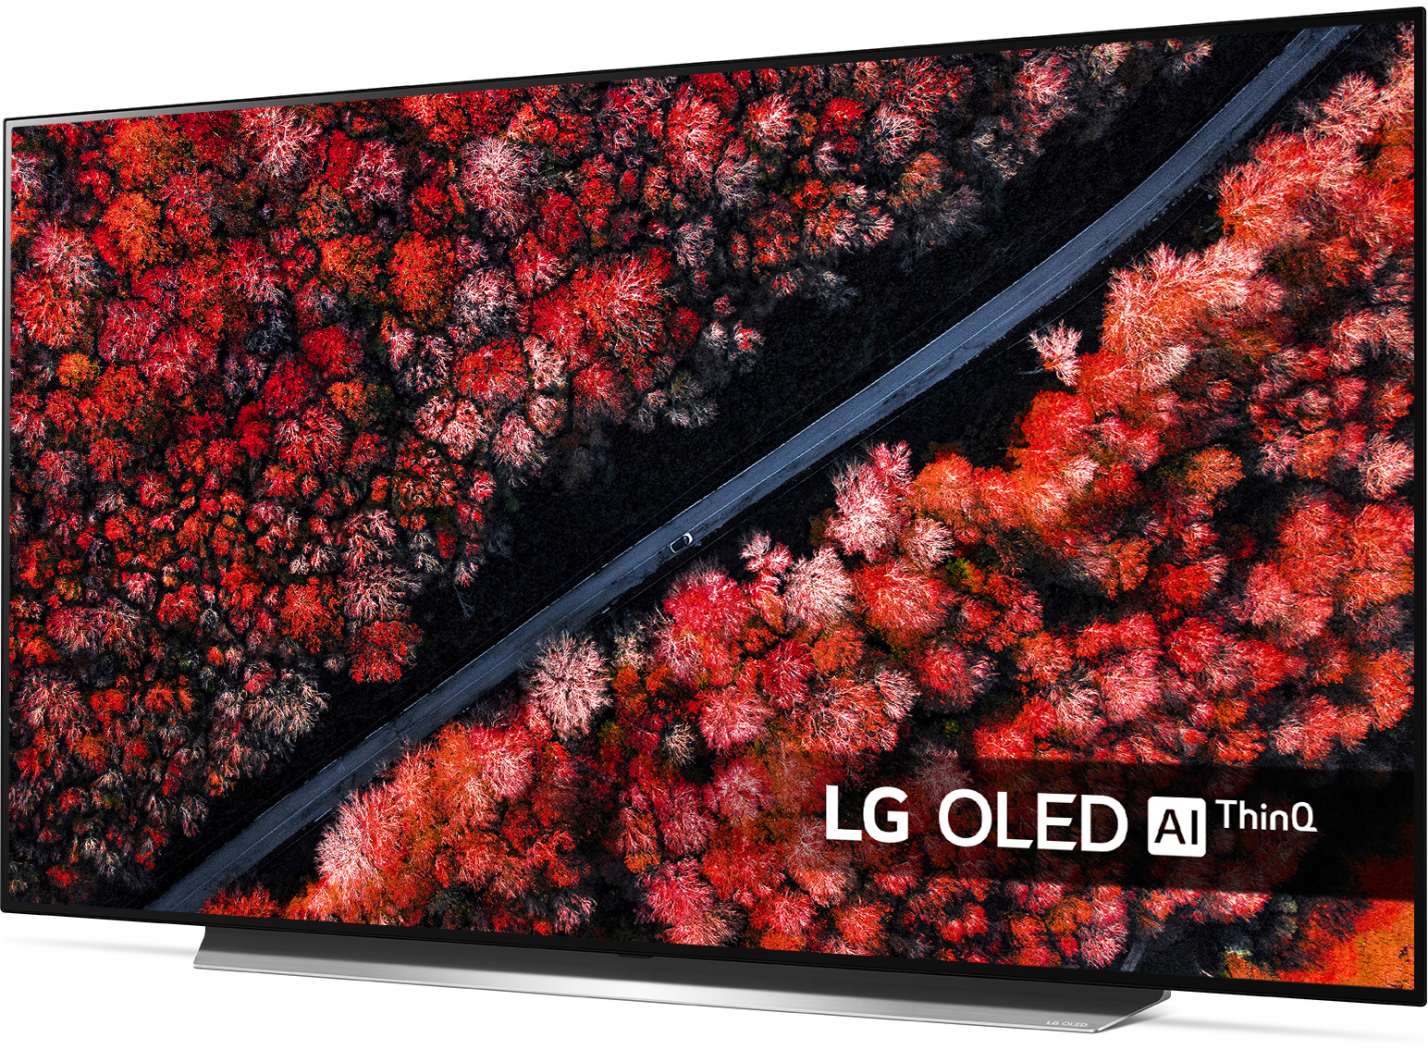 LG OLED C9 kopen tijdens black friday vergelijk hier